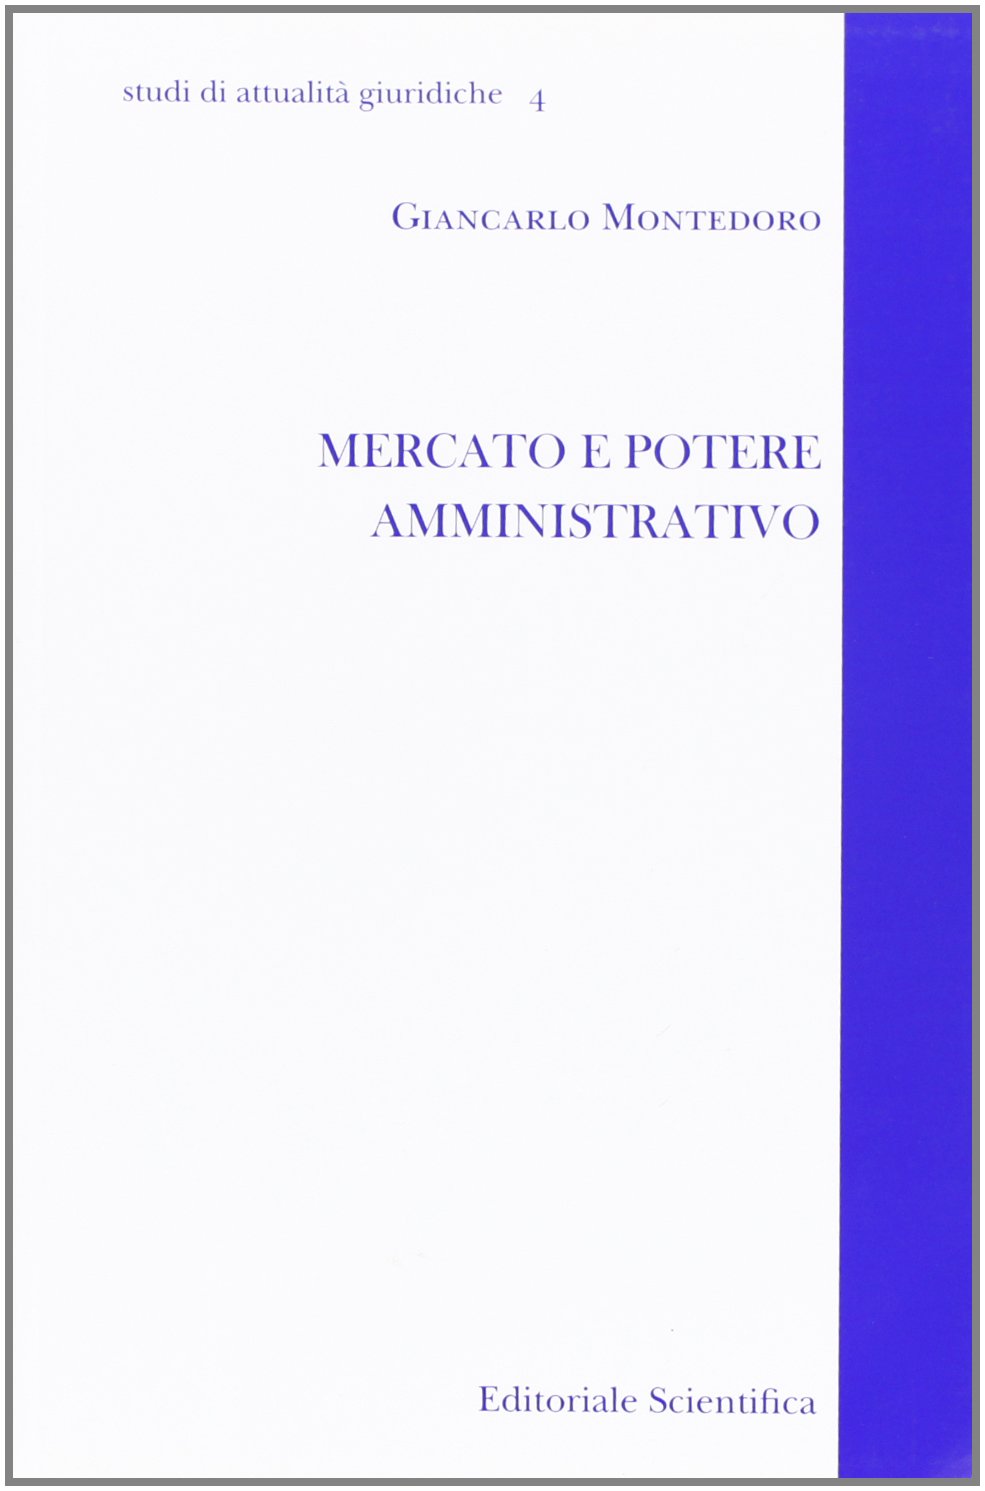 Libri Giancarlo Montedoro - Mercato E Potere Amministrativo NUOVO SIGILLATO, EDIZIONE DEL 16/02/2011 SUBITO DISPONIBILE